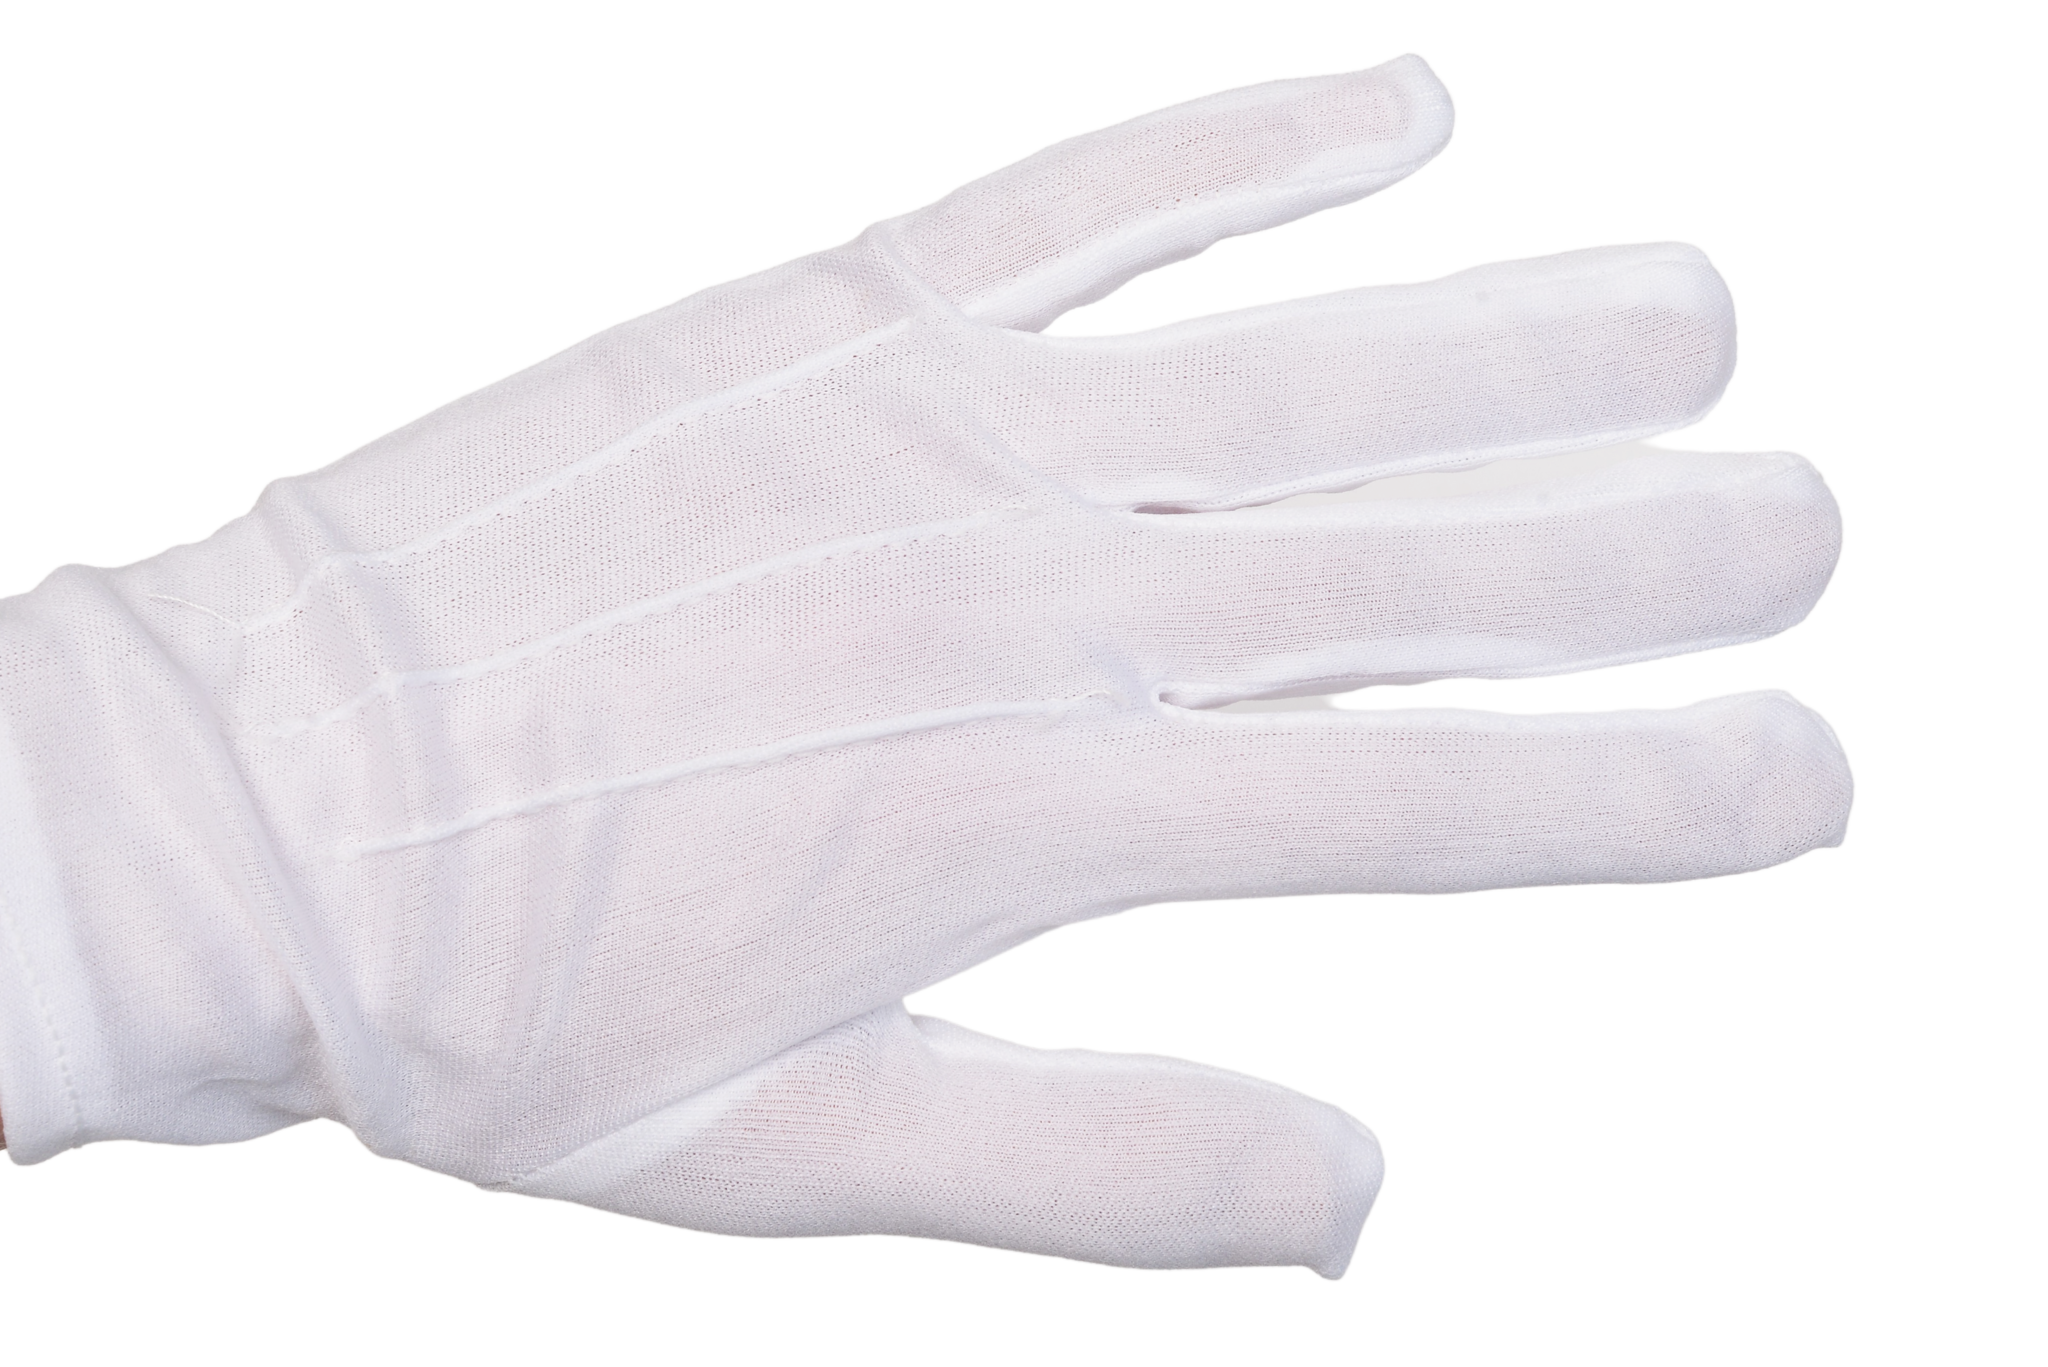 В мешке 24 белых перчаток. Перчатки White p7 0899.401.107. ДС 2 перчатки белые. LGC Victori перчатки белые. Перчатки на белом фоне.